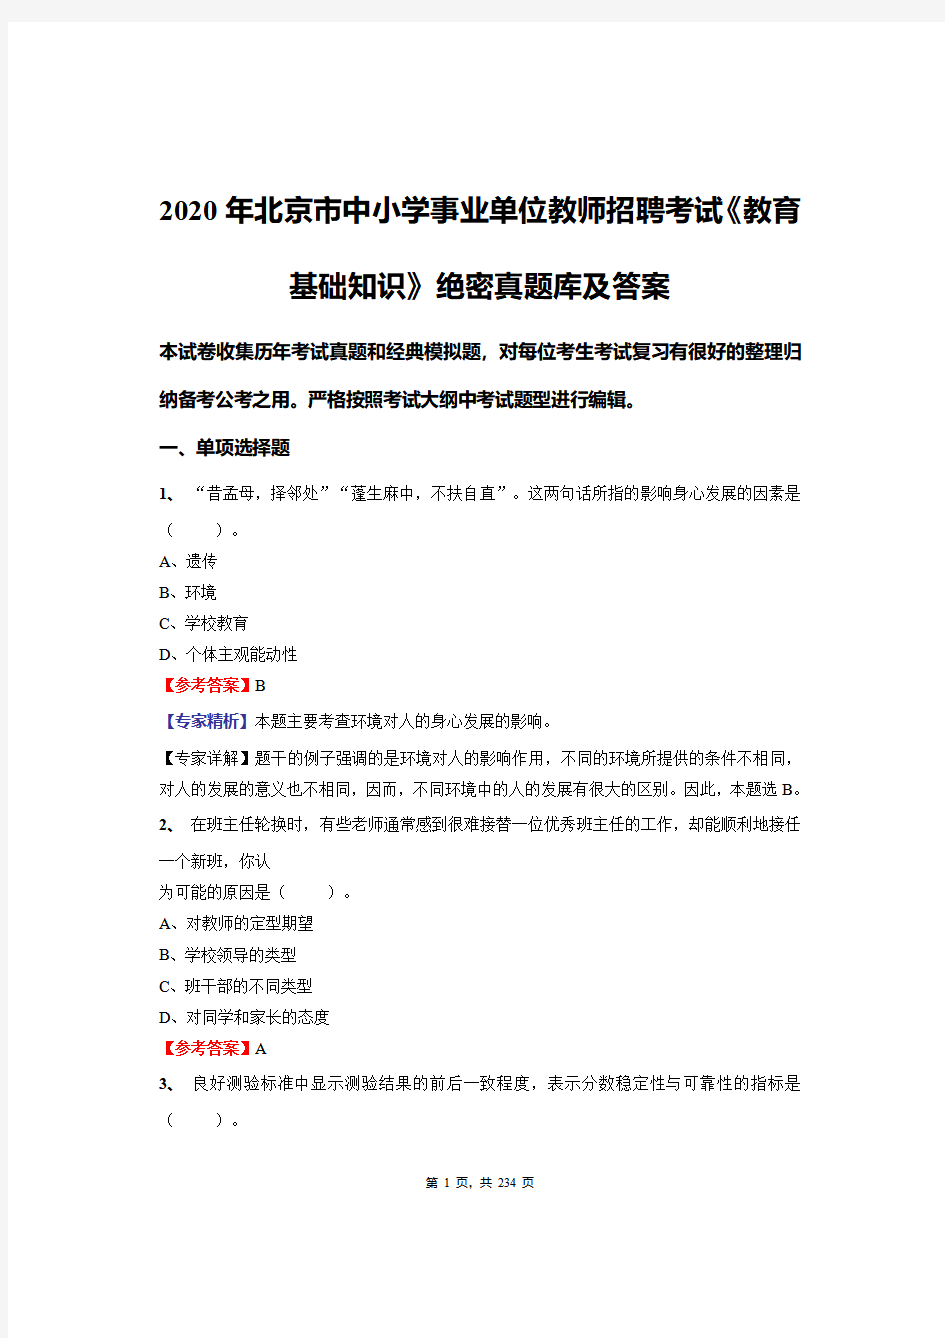 2020年北京市中小学事业单位教师招聘考试《教育基础知识》绝密真题库及答案